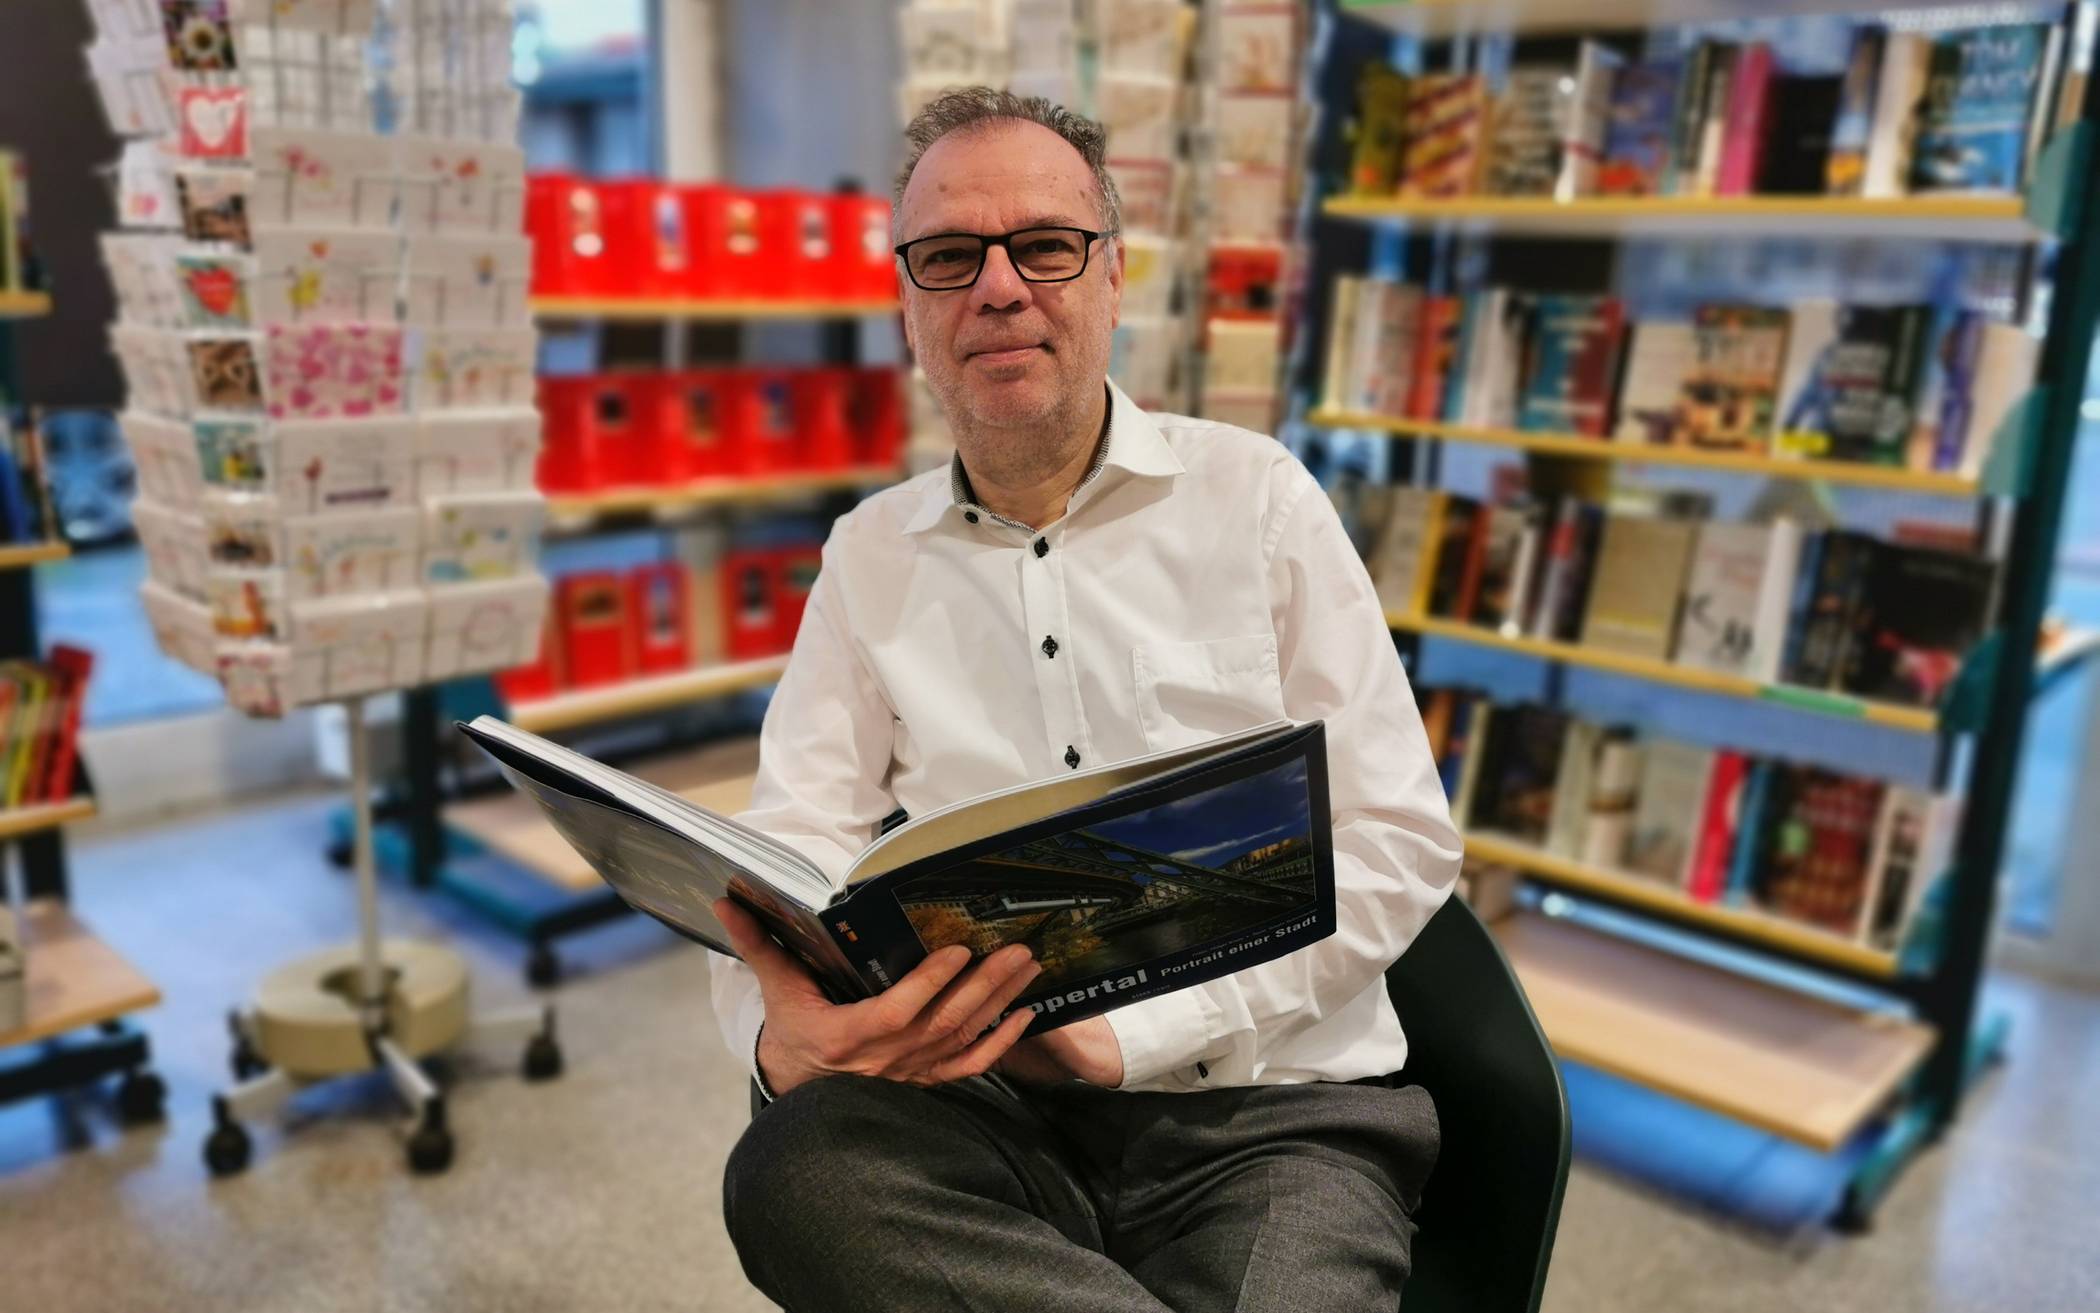  Michael Kozinowski, Inhaber der Buchhandlung Klaus v. Mackensen, freut sich über seine treuen Kunden, die auch weiterhin bei ihm Bücher bestellen.  